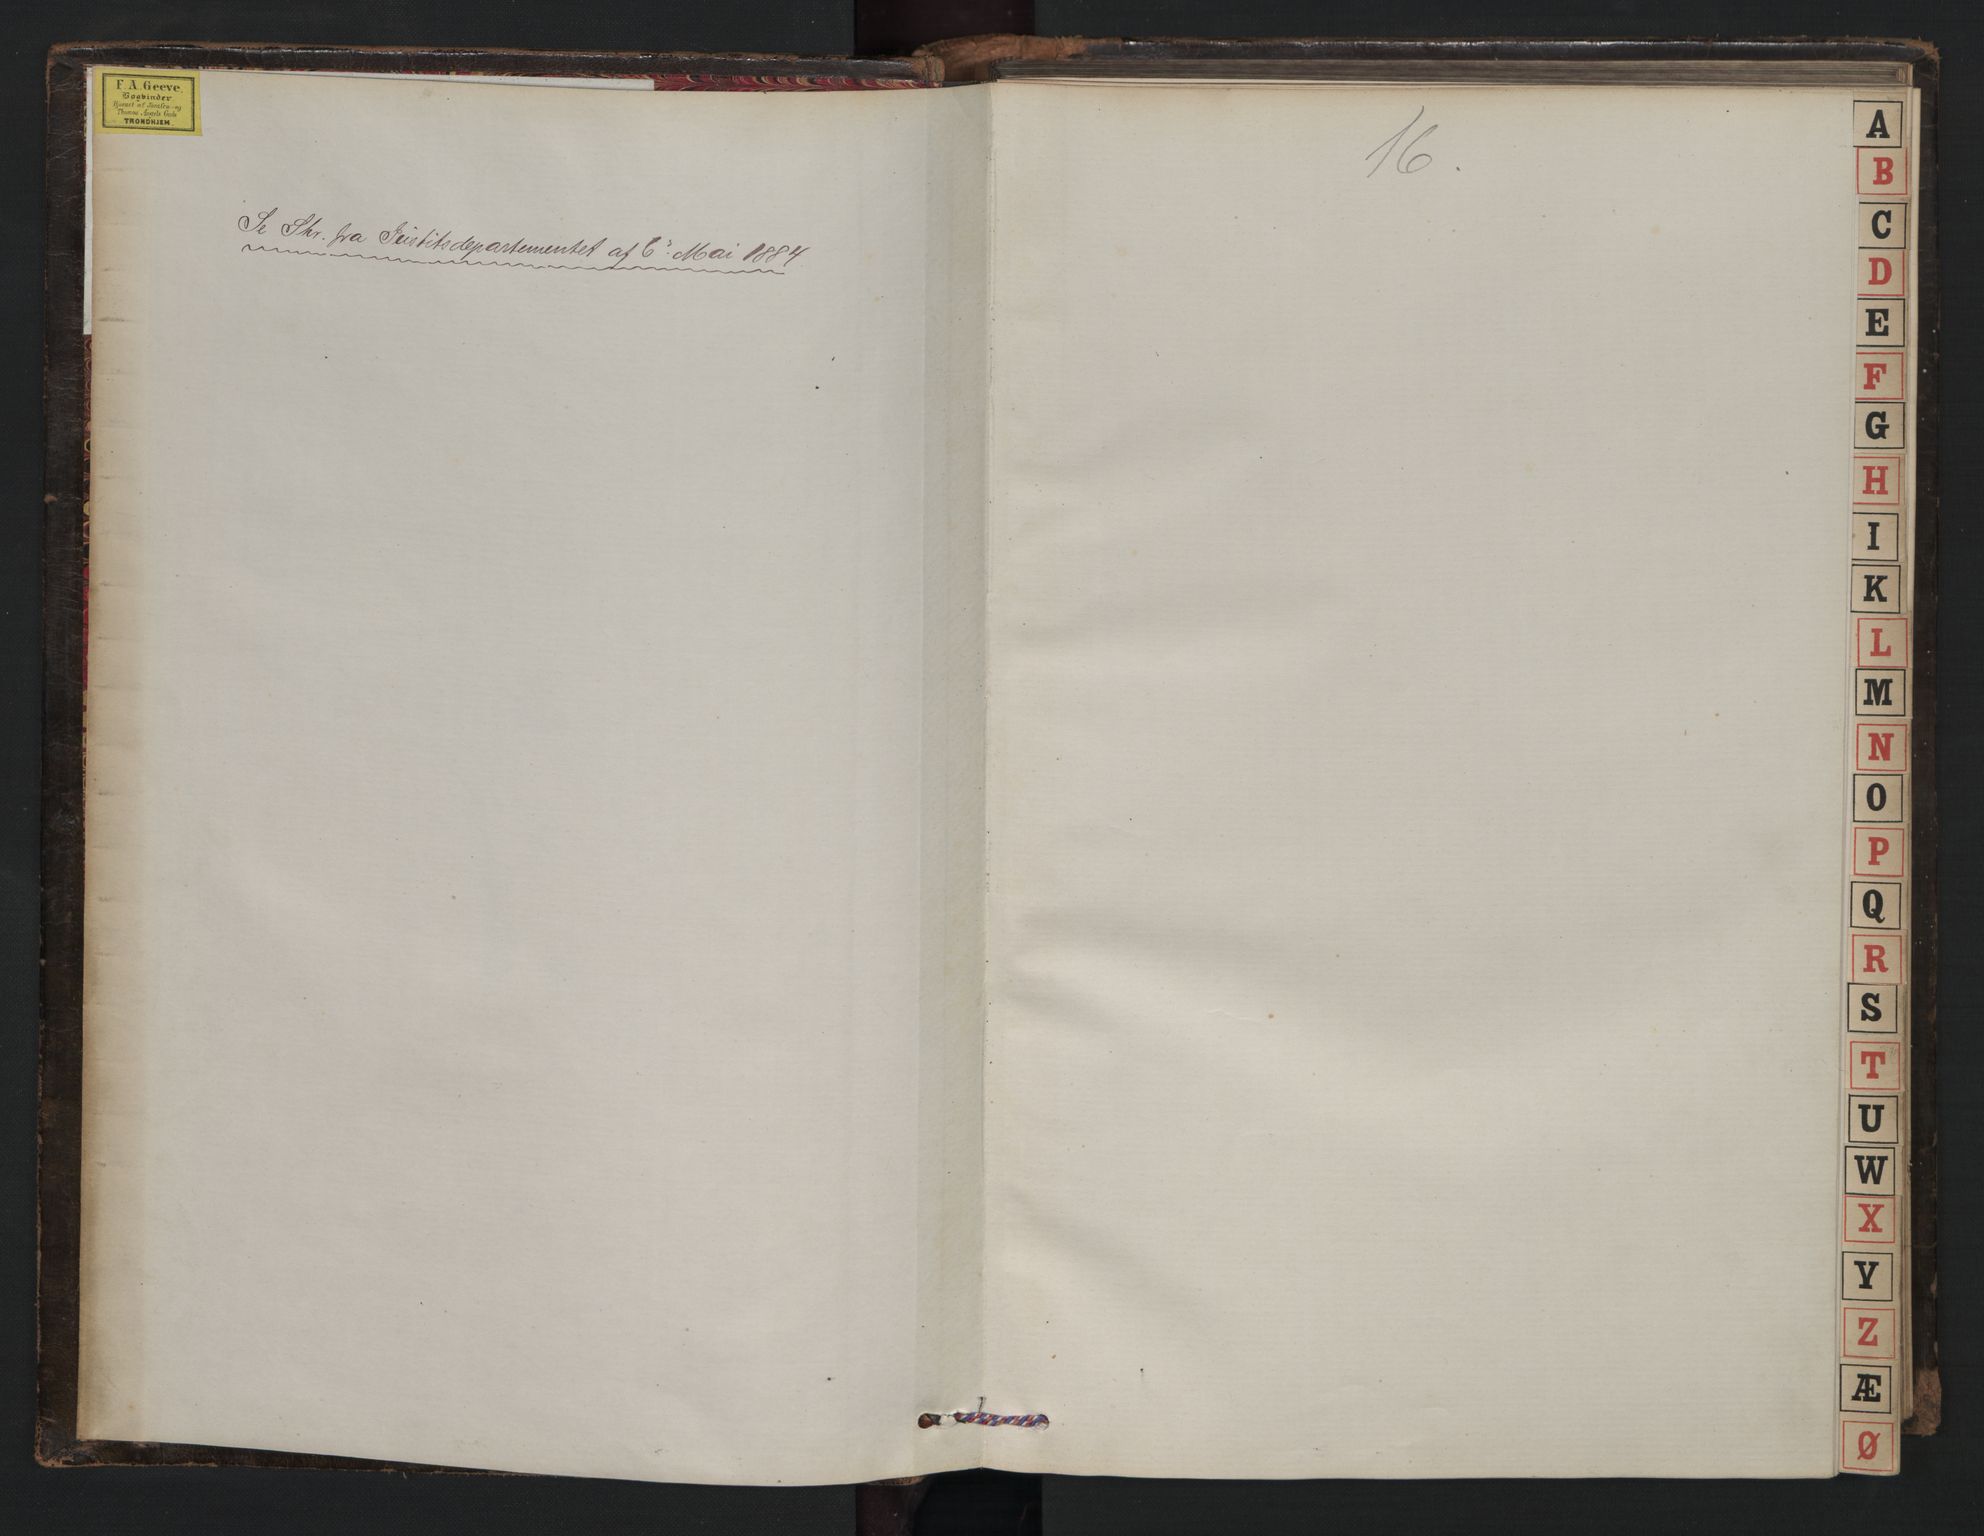 Strinda og Selbu sorenskriveri, SAT/A-0015/2/2A/L0011: Panteregister nr. 11, 1882-1882